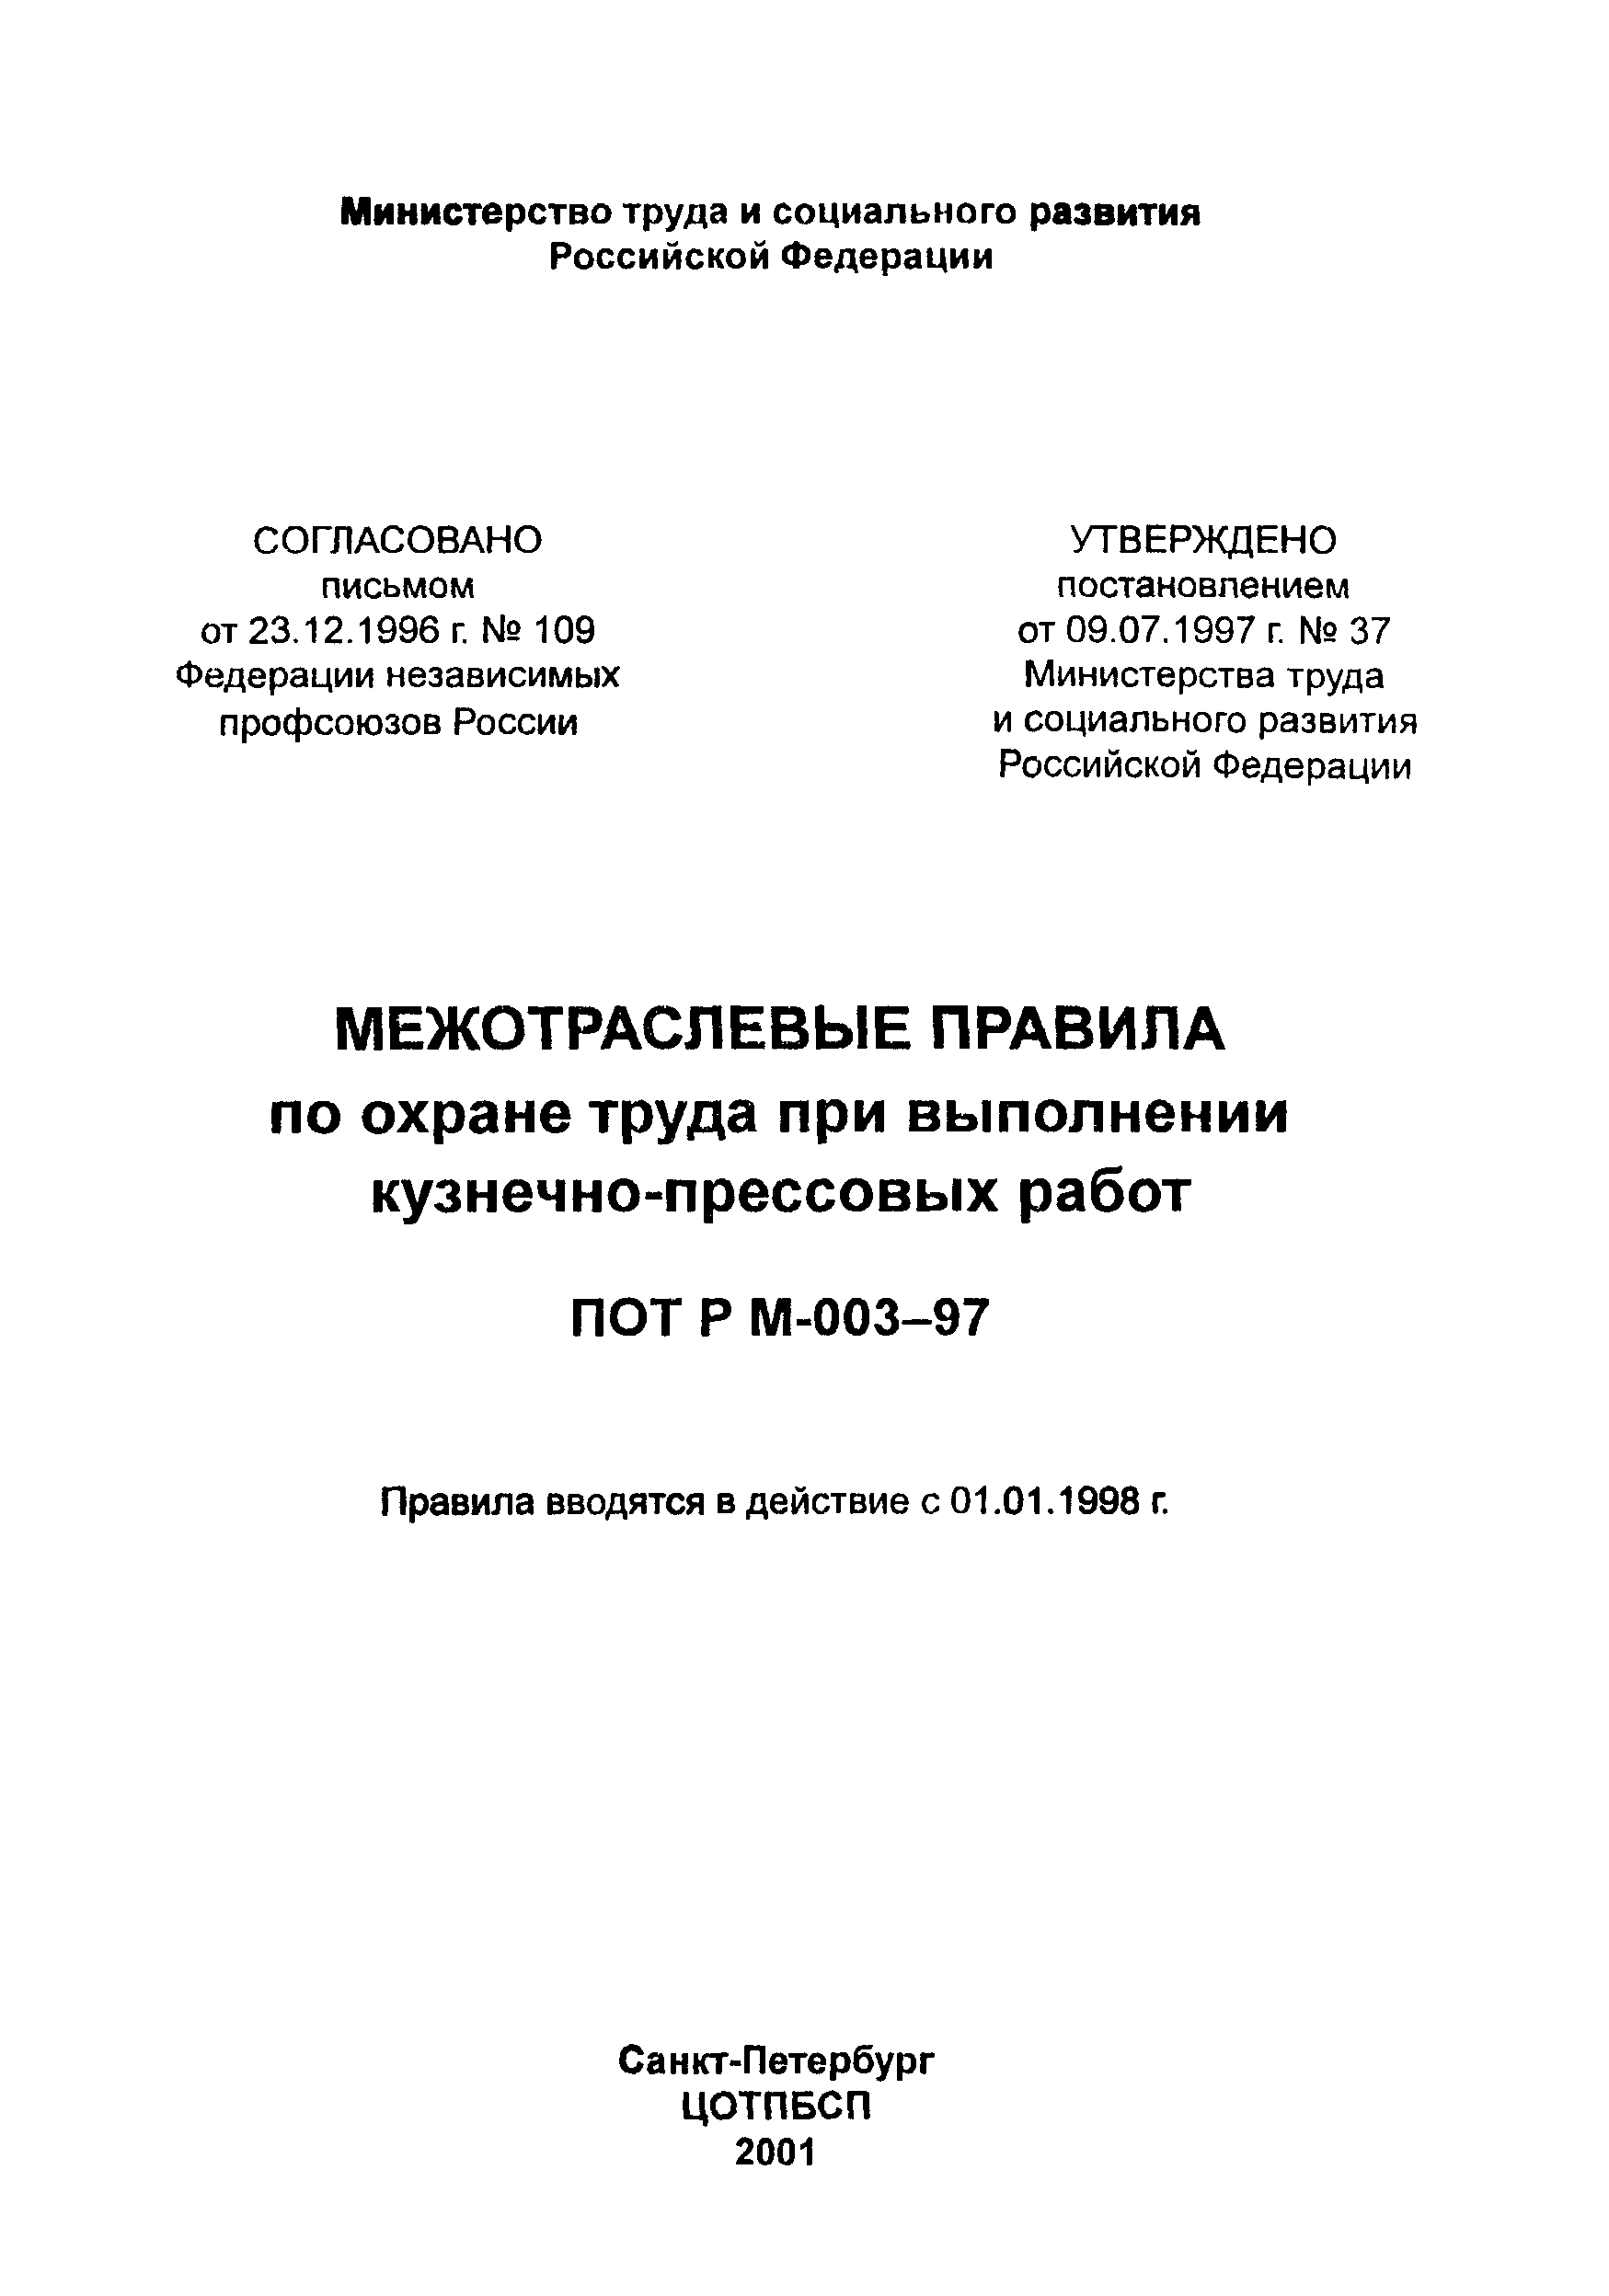 ПОТ Р М-003-97